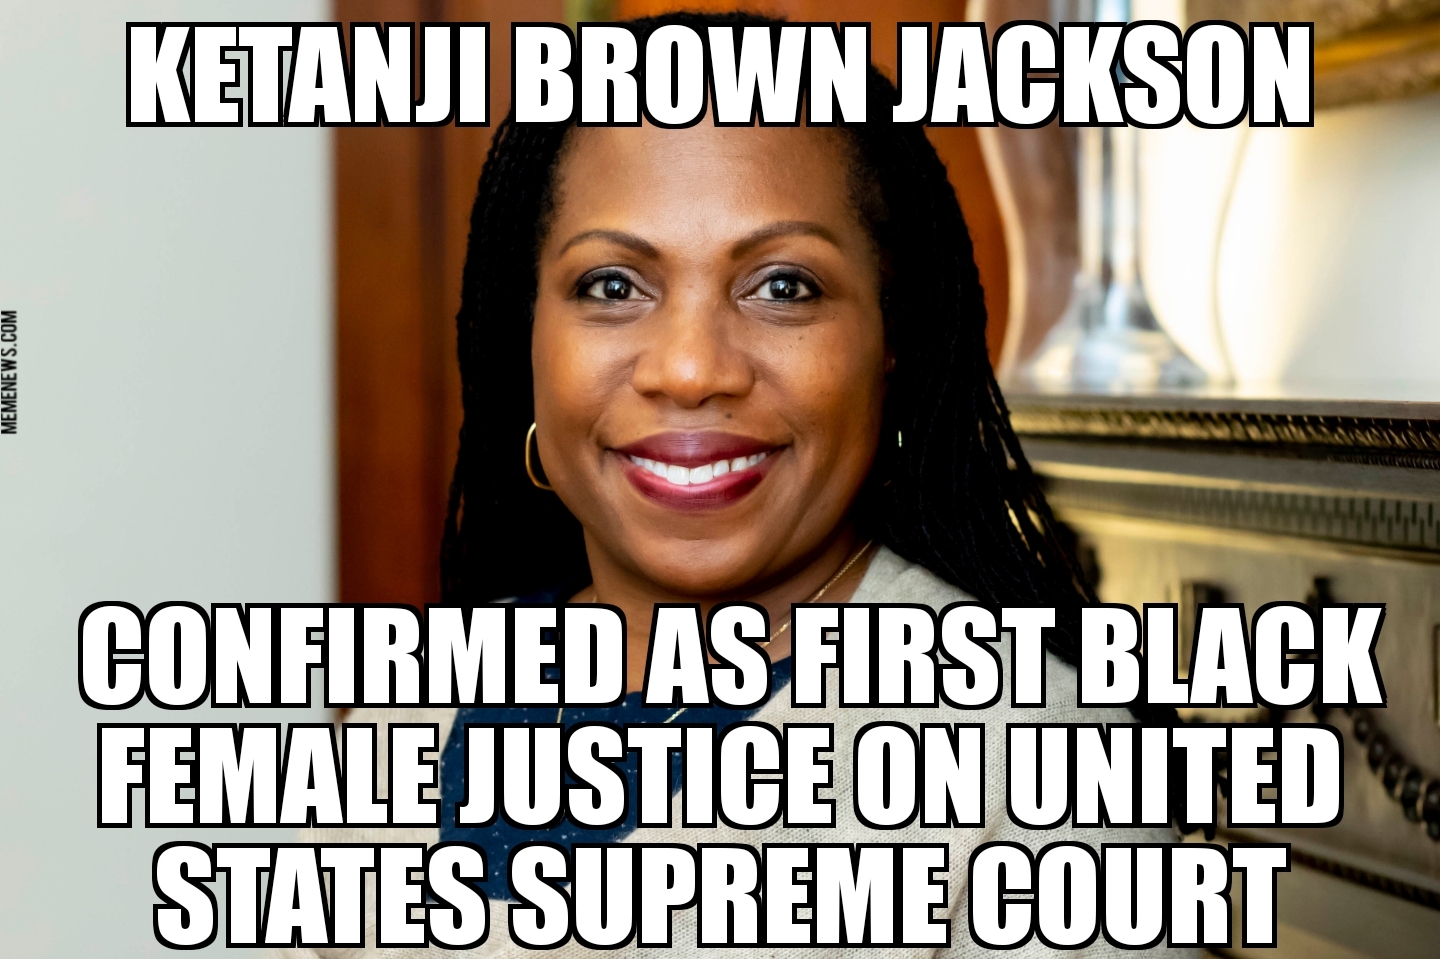 Ketanji Brown Jackson confirmed to Supreme Court